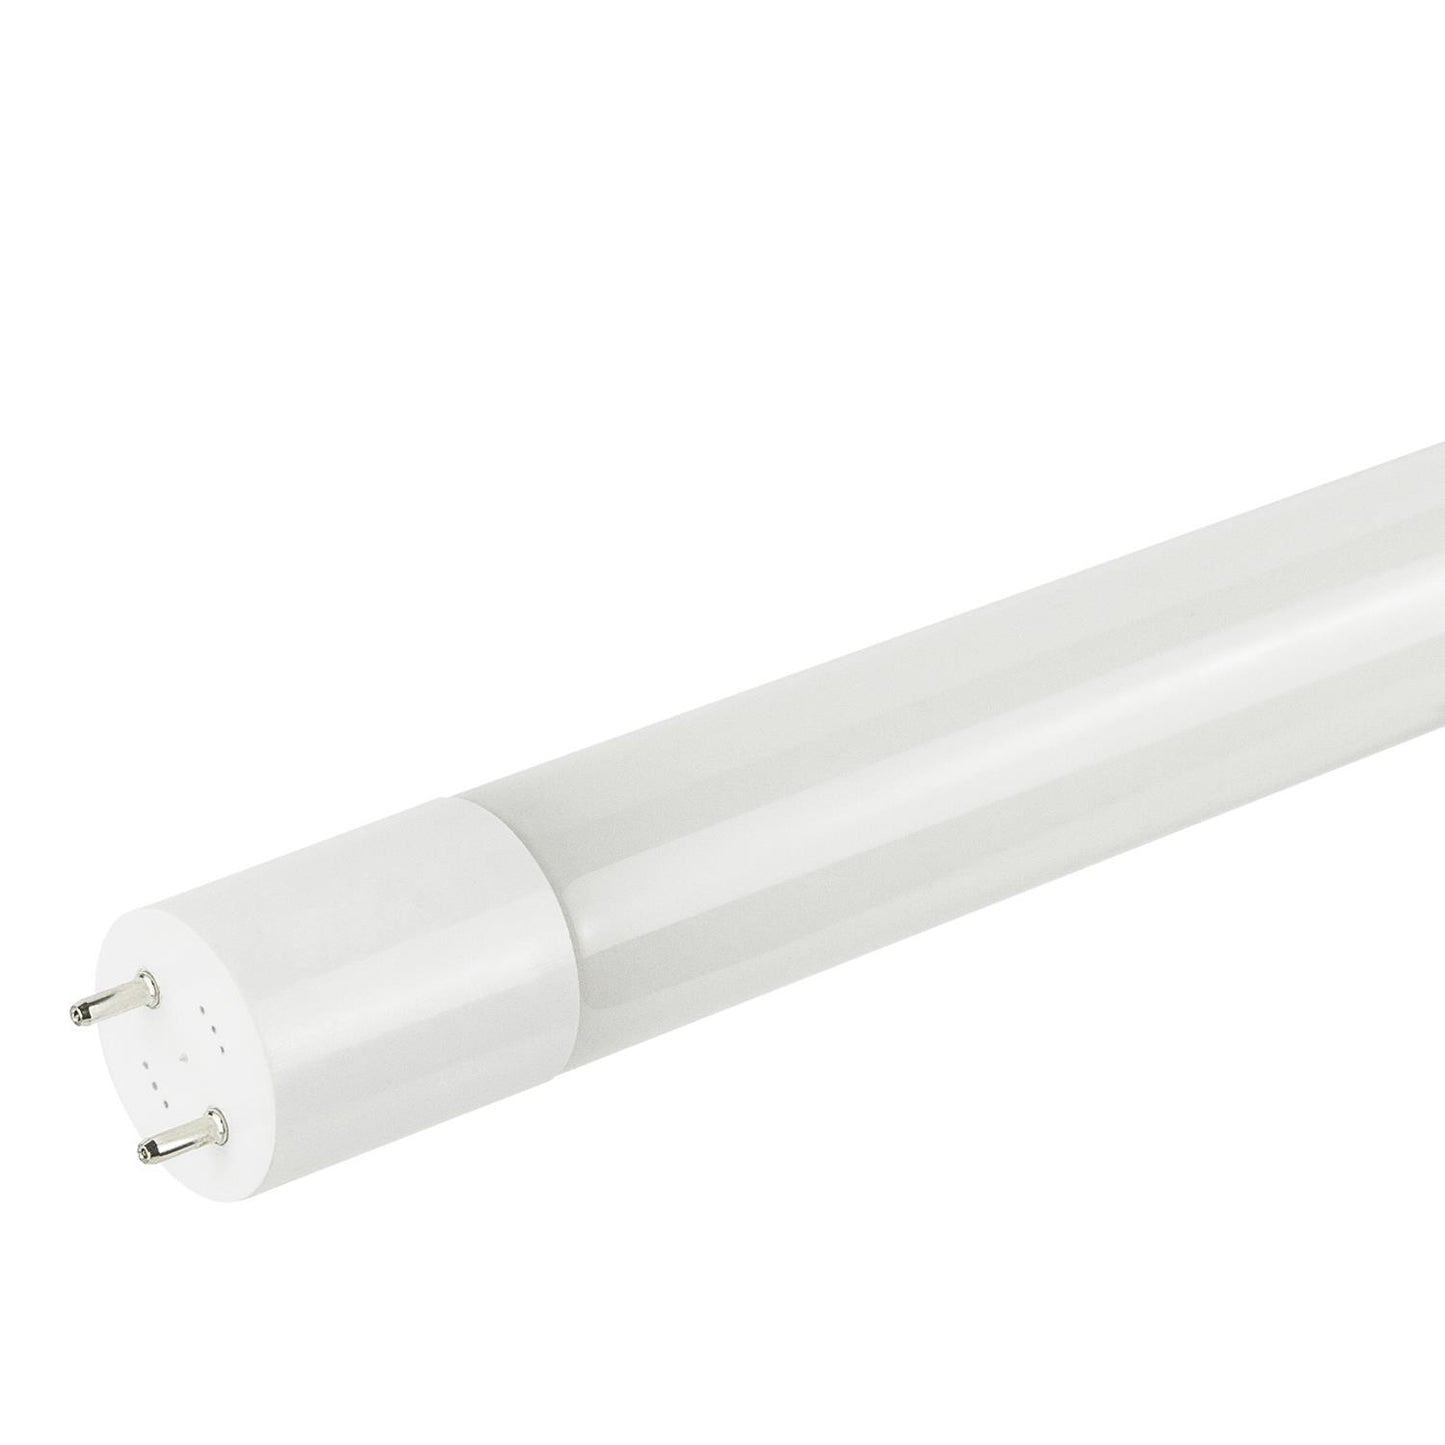 Sunlite T8/LED/BPD/4'/17W/35K 17 Watt T8 Lamp Medium Bi-Pin (G13) Base Neutral White